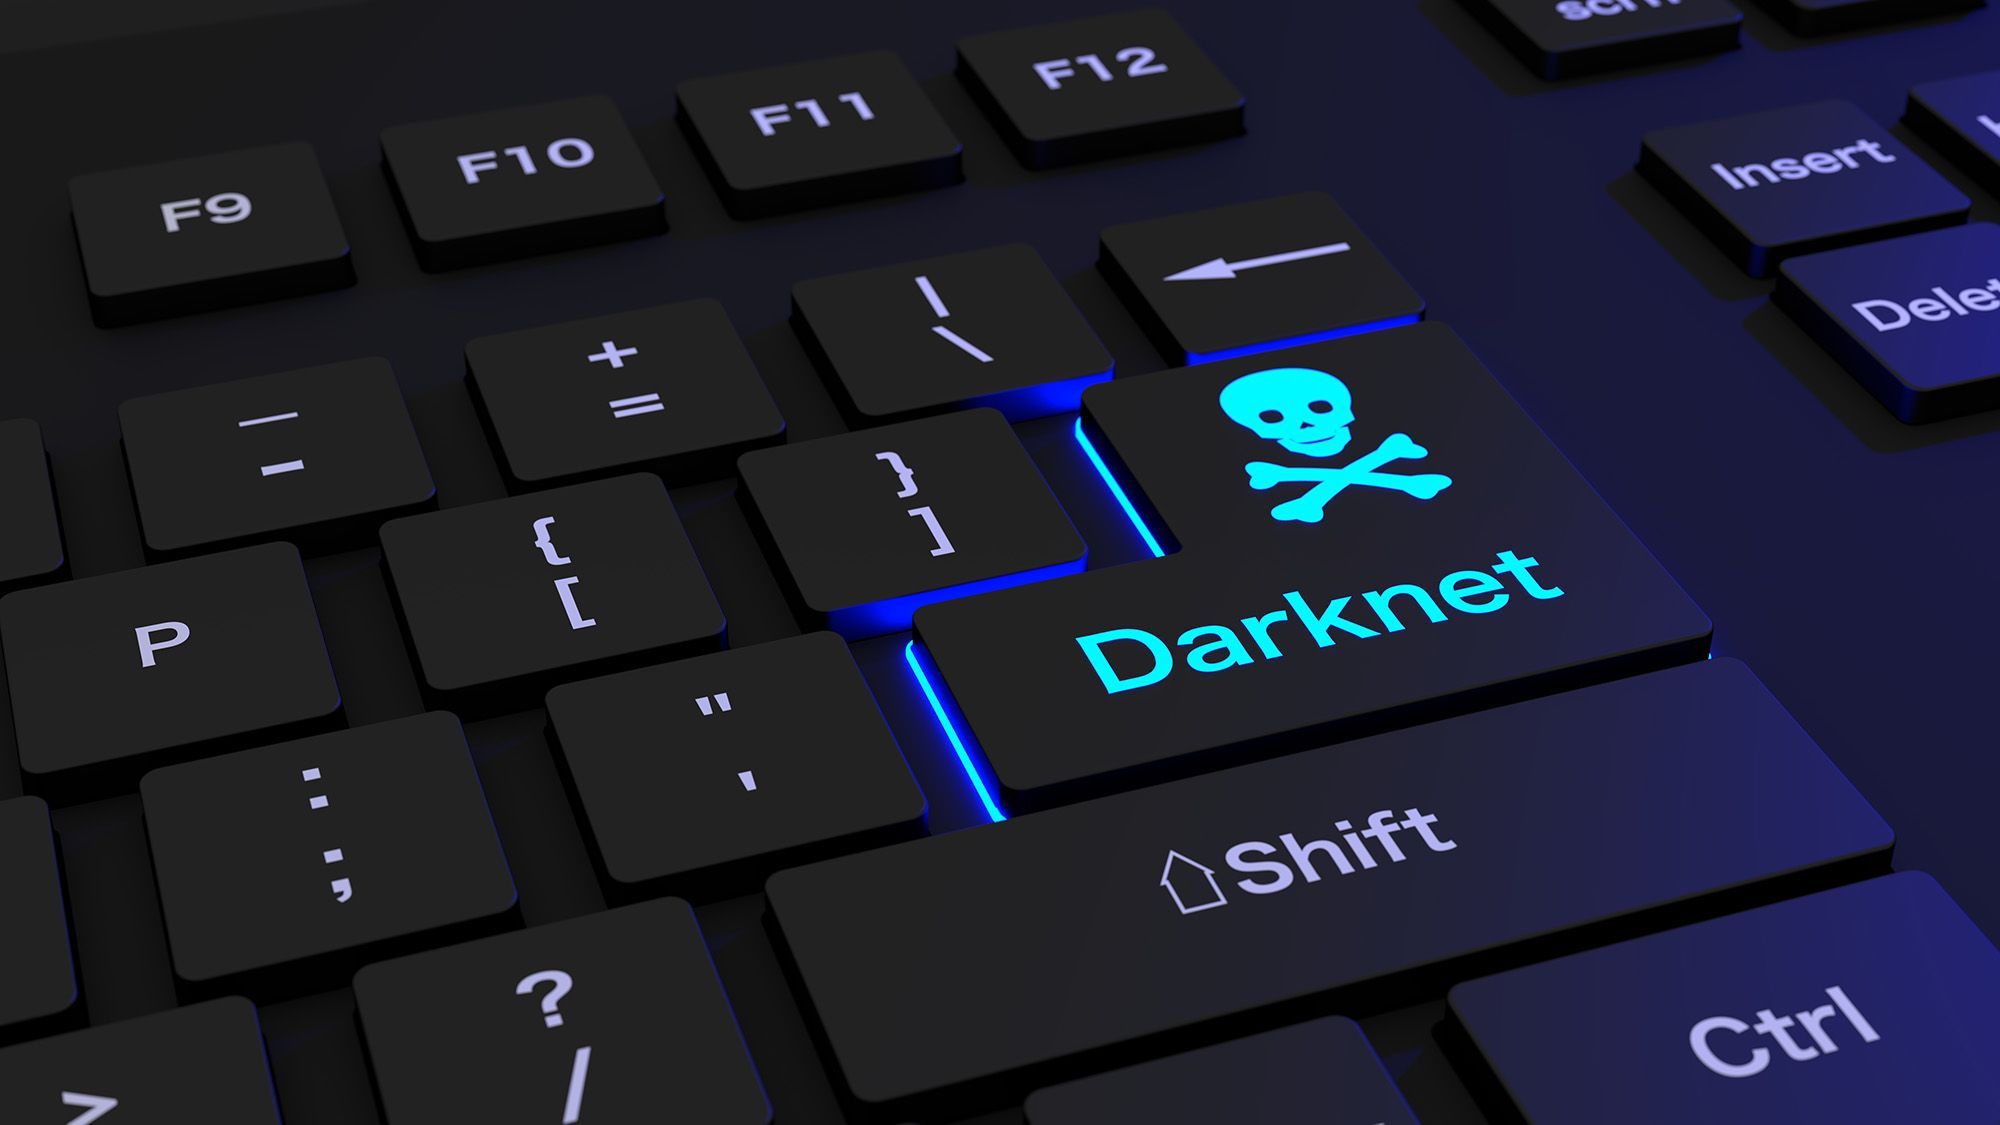 Darknet Empire Market